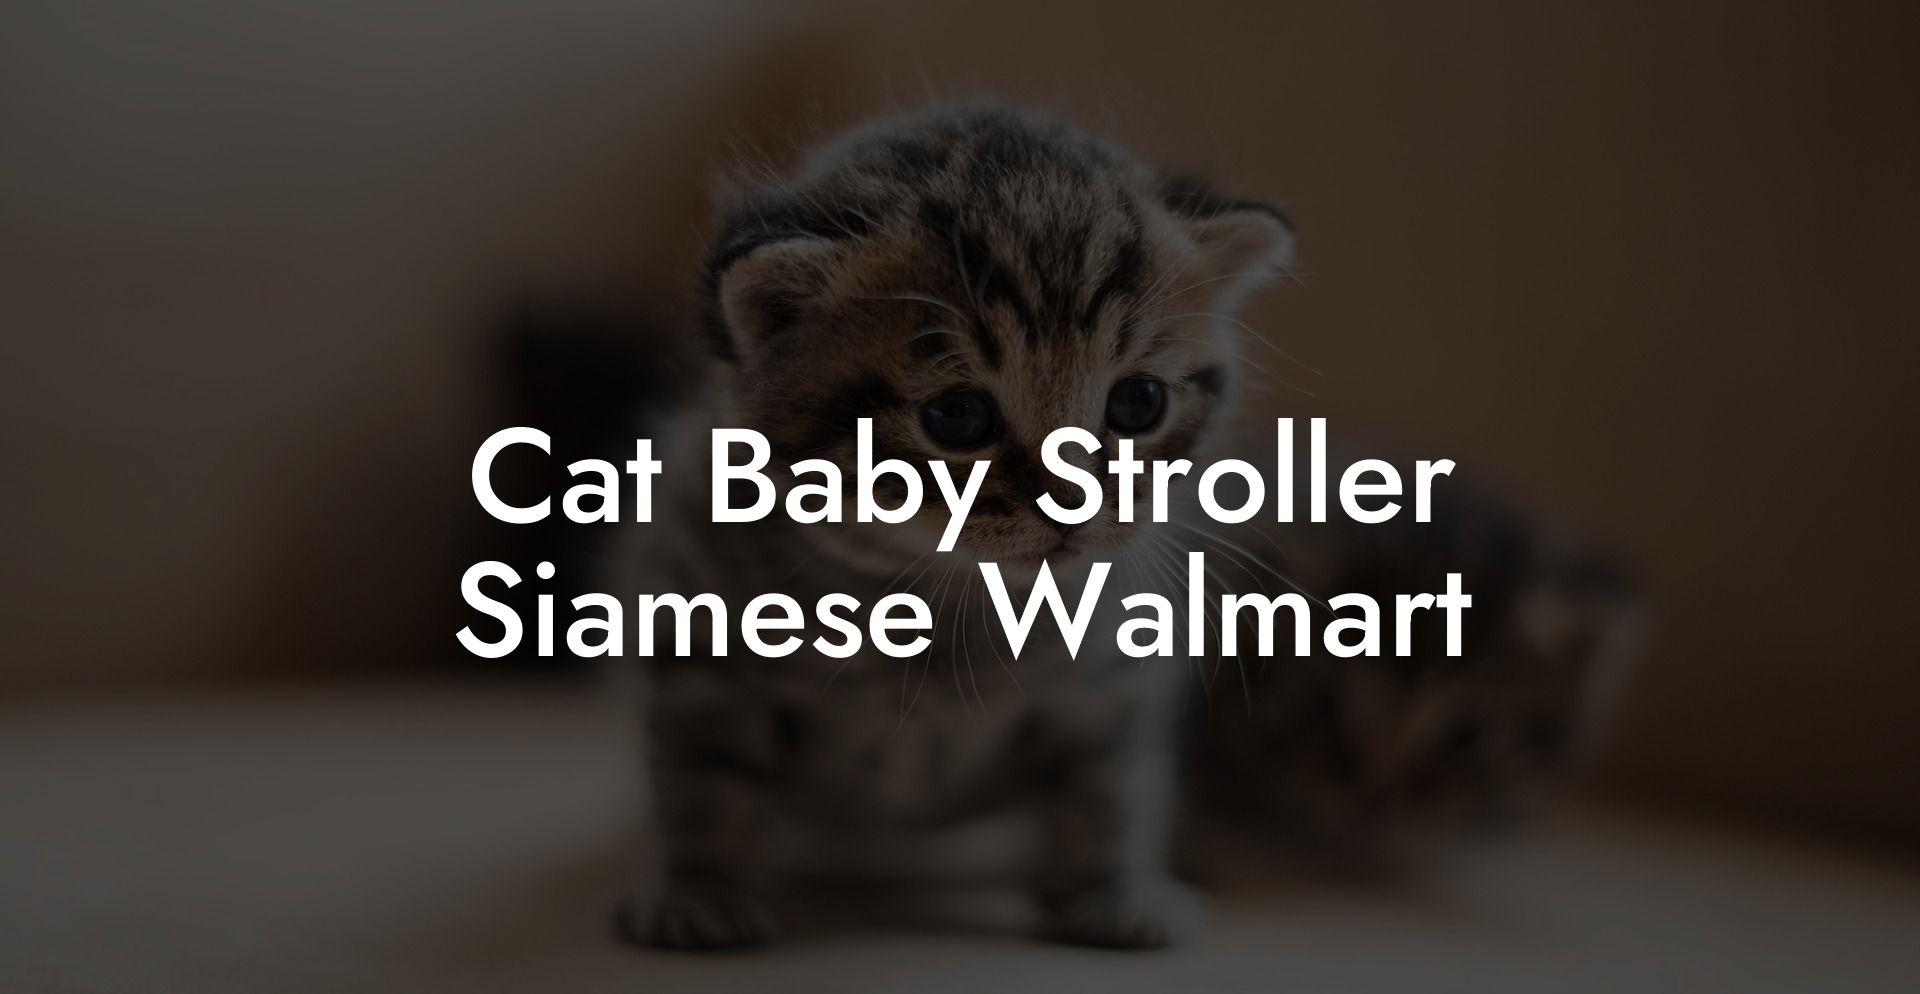 Cat Baby Stroller Siamese Walmart